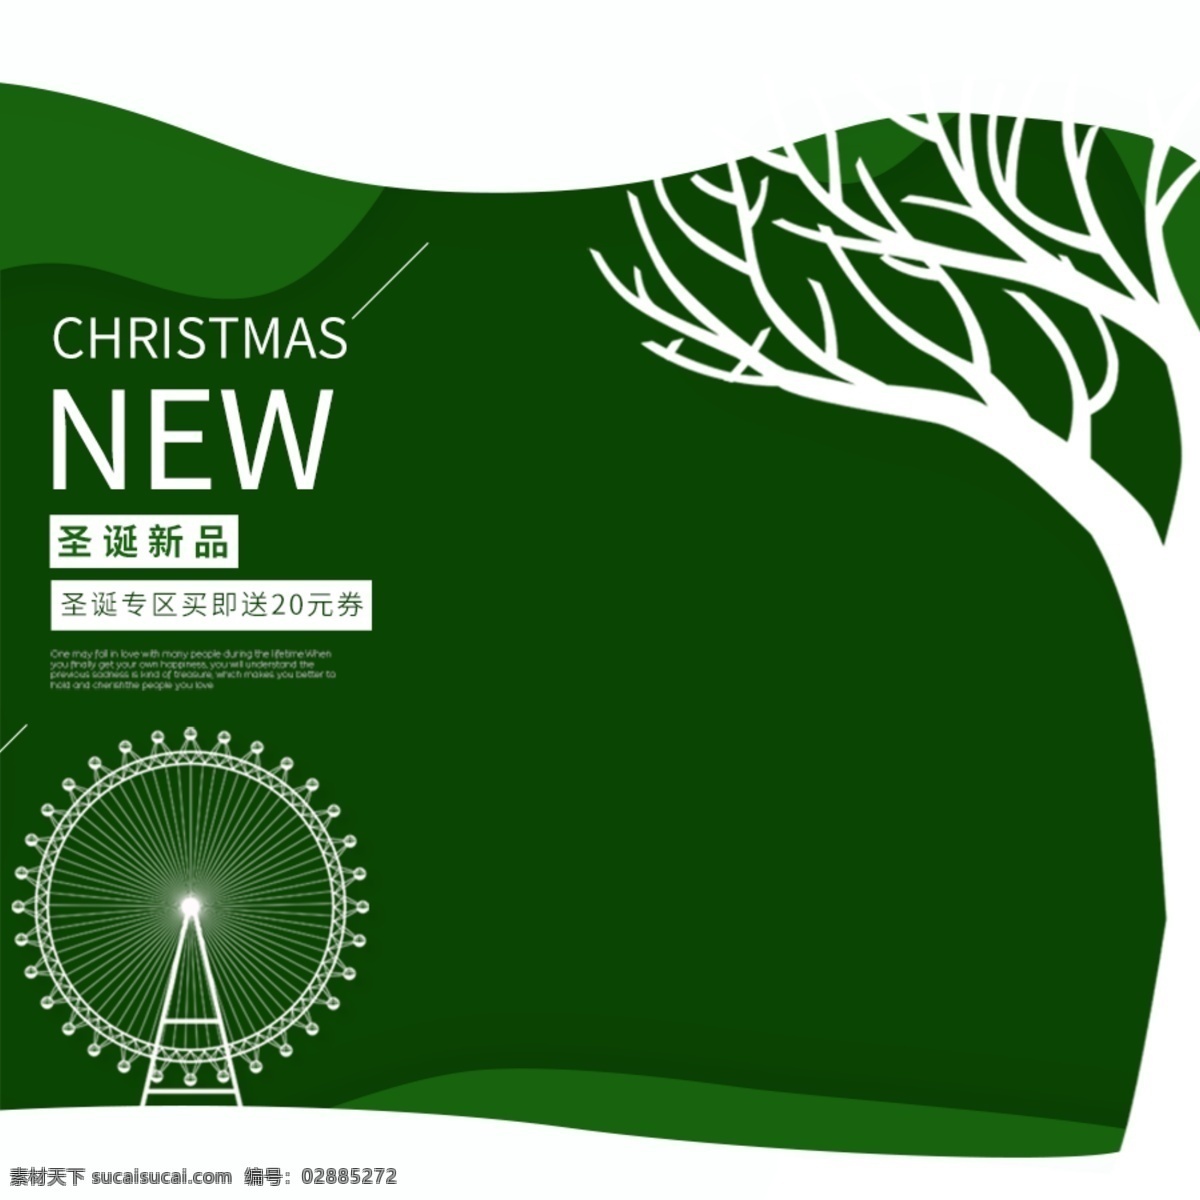 圣诞 新品 直通车 创意 主 图 通用 模板 圣诞节 直通车创意图 钻展 圣诞海报 psd模板 主图